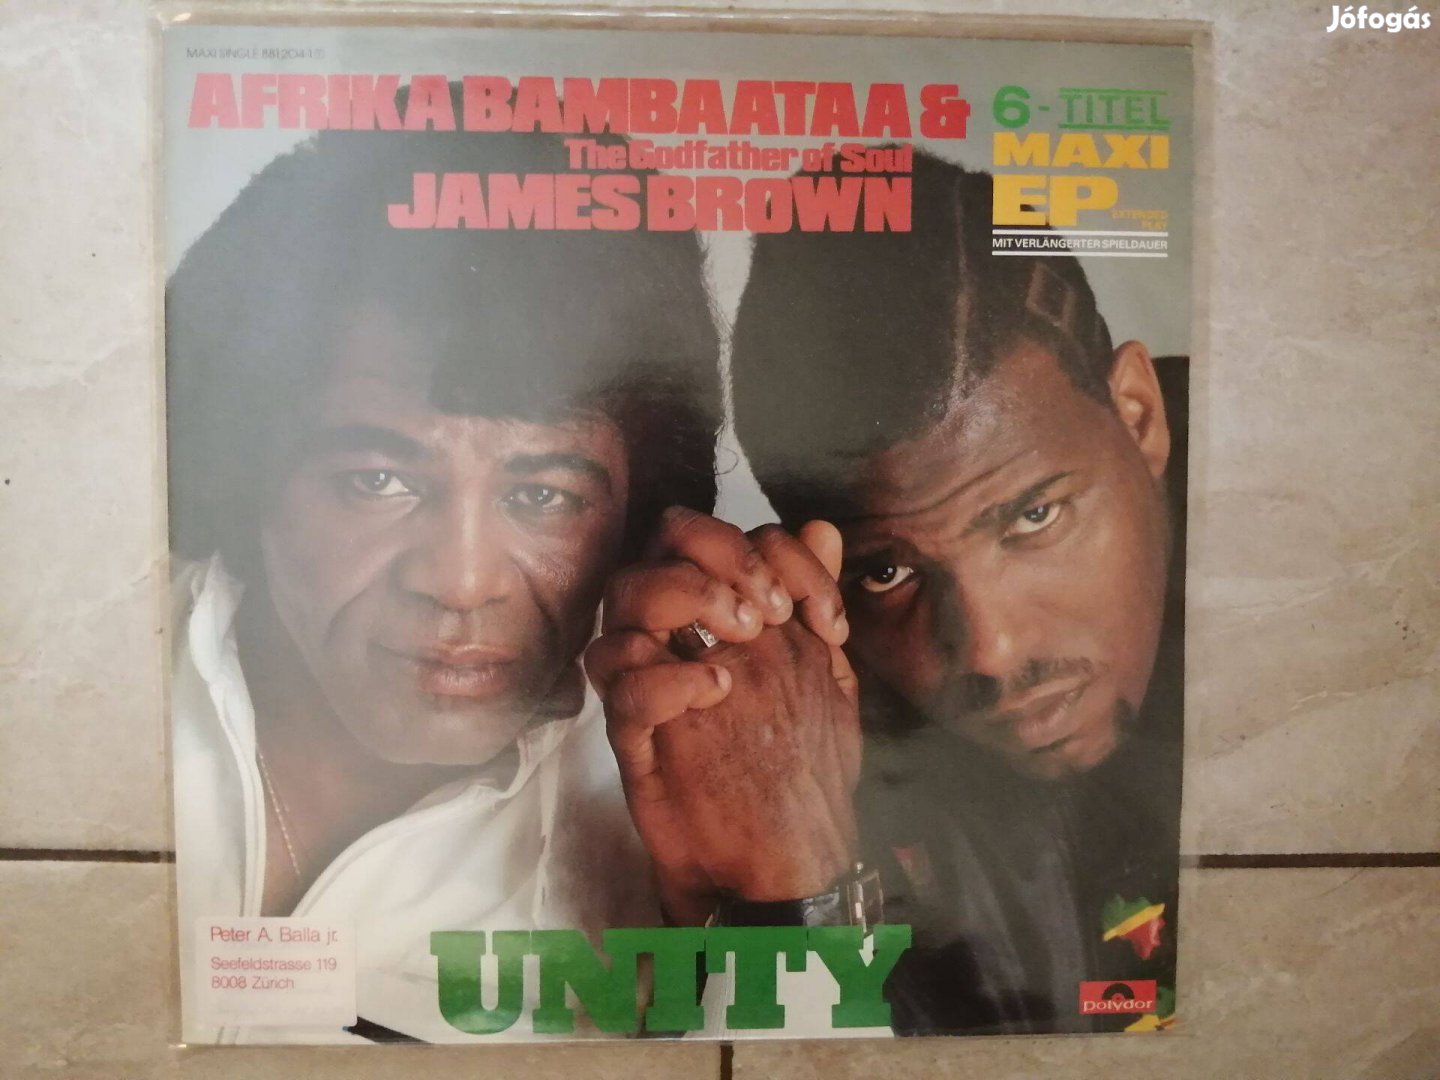 James Brown & Afrika Baambataa -Maxi bakelit lemez